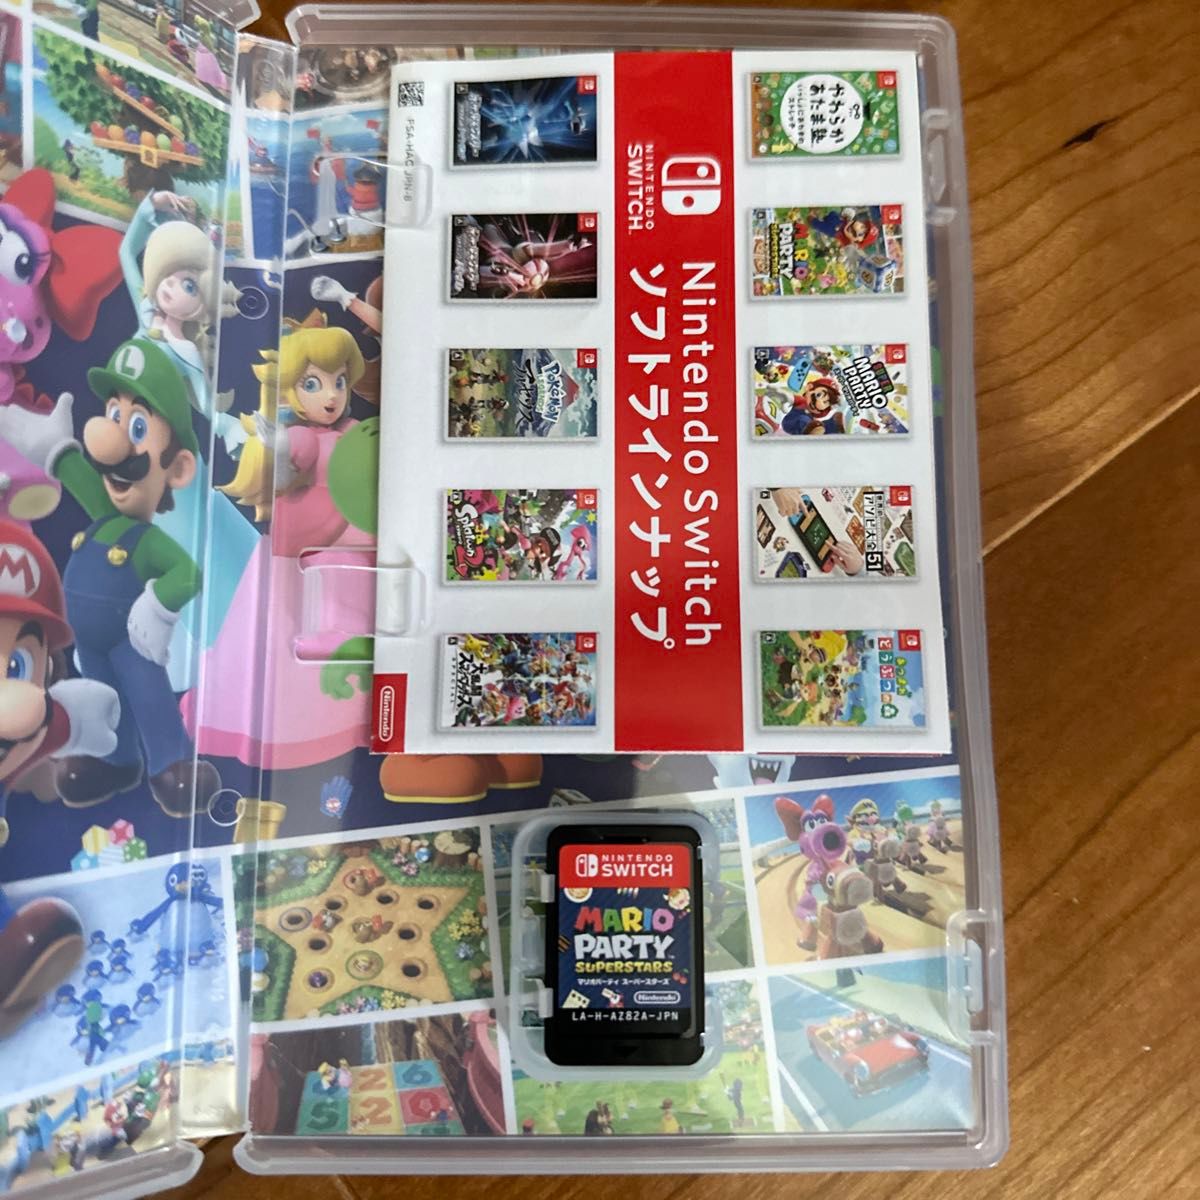 Nintendo Switch マリオパーティ スーパースターズ